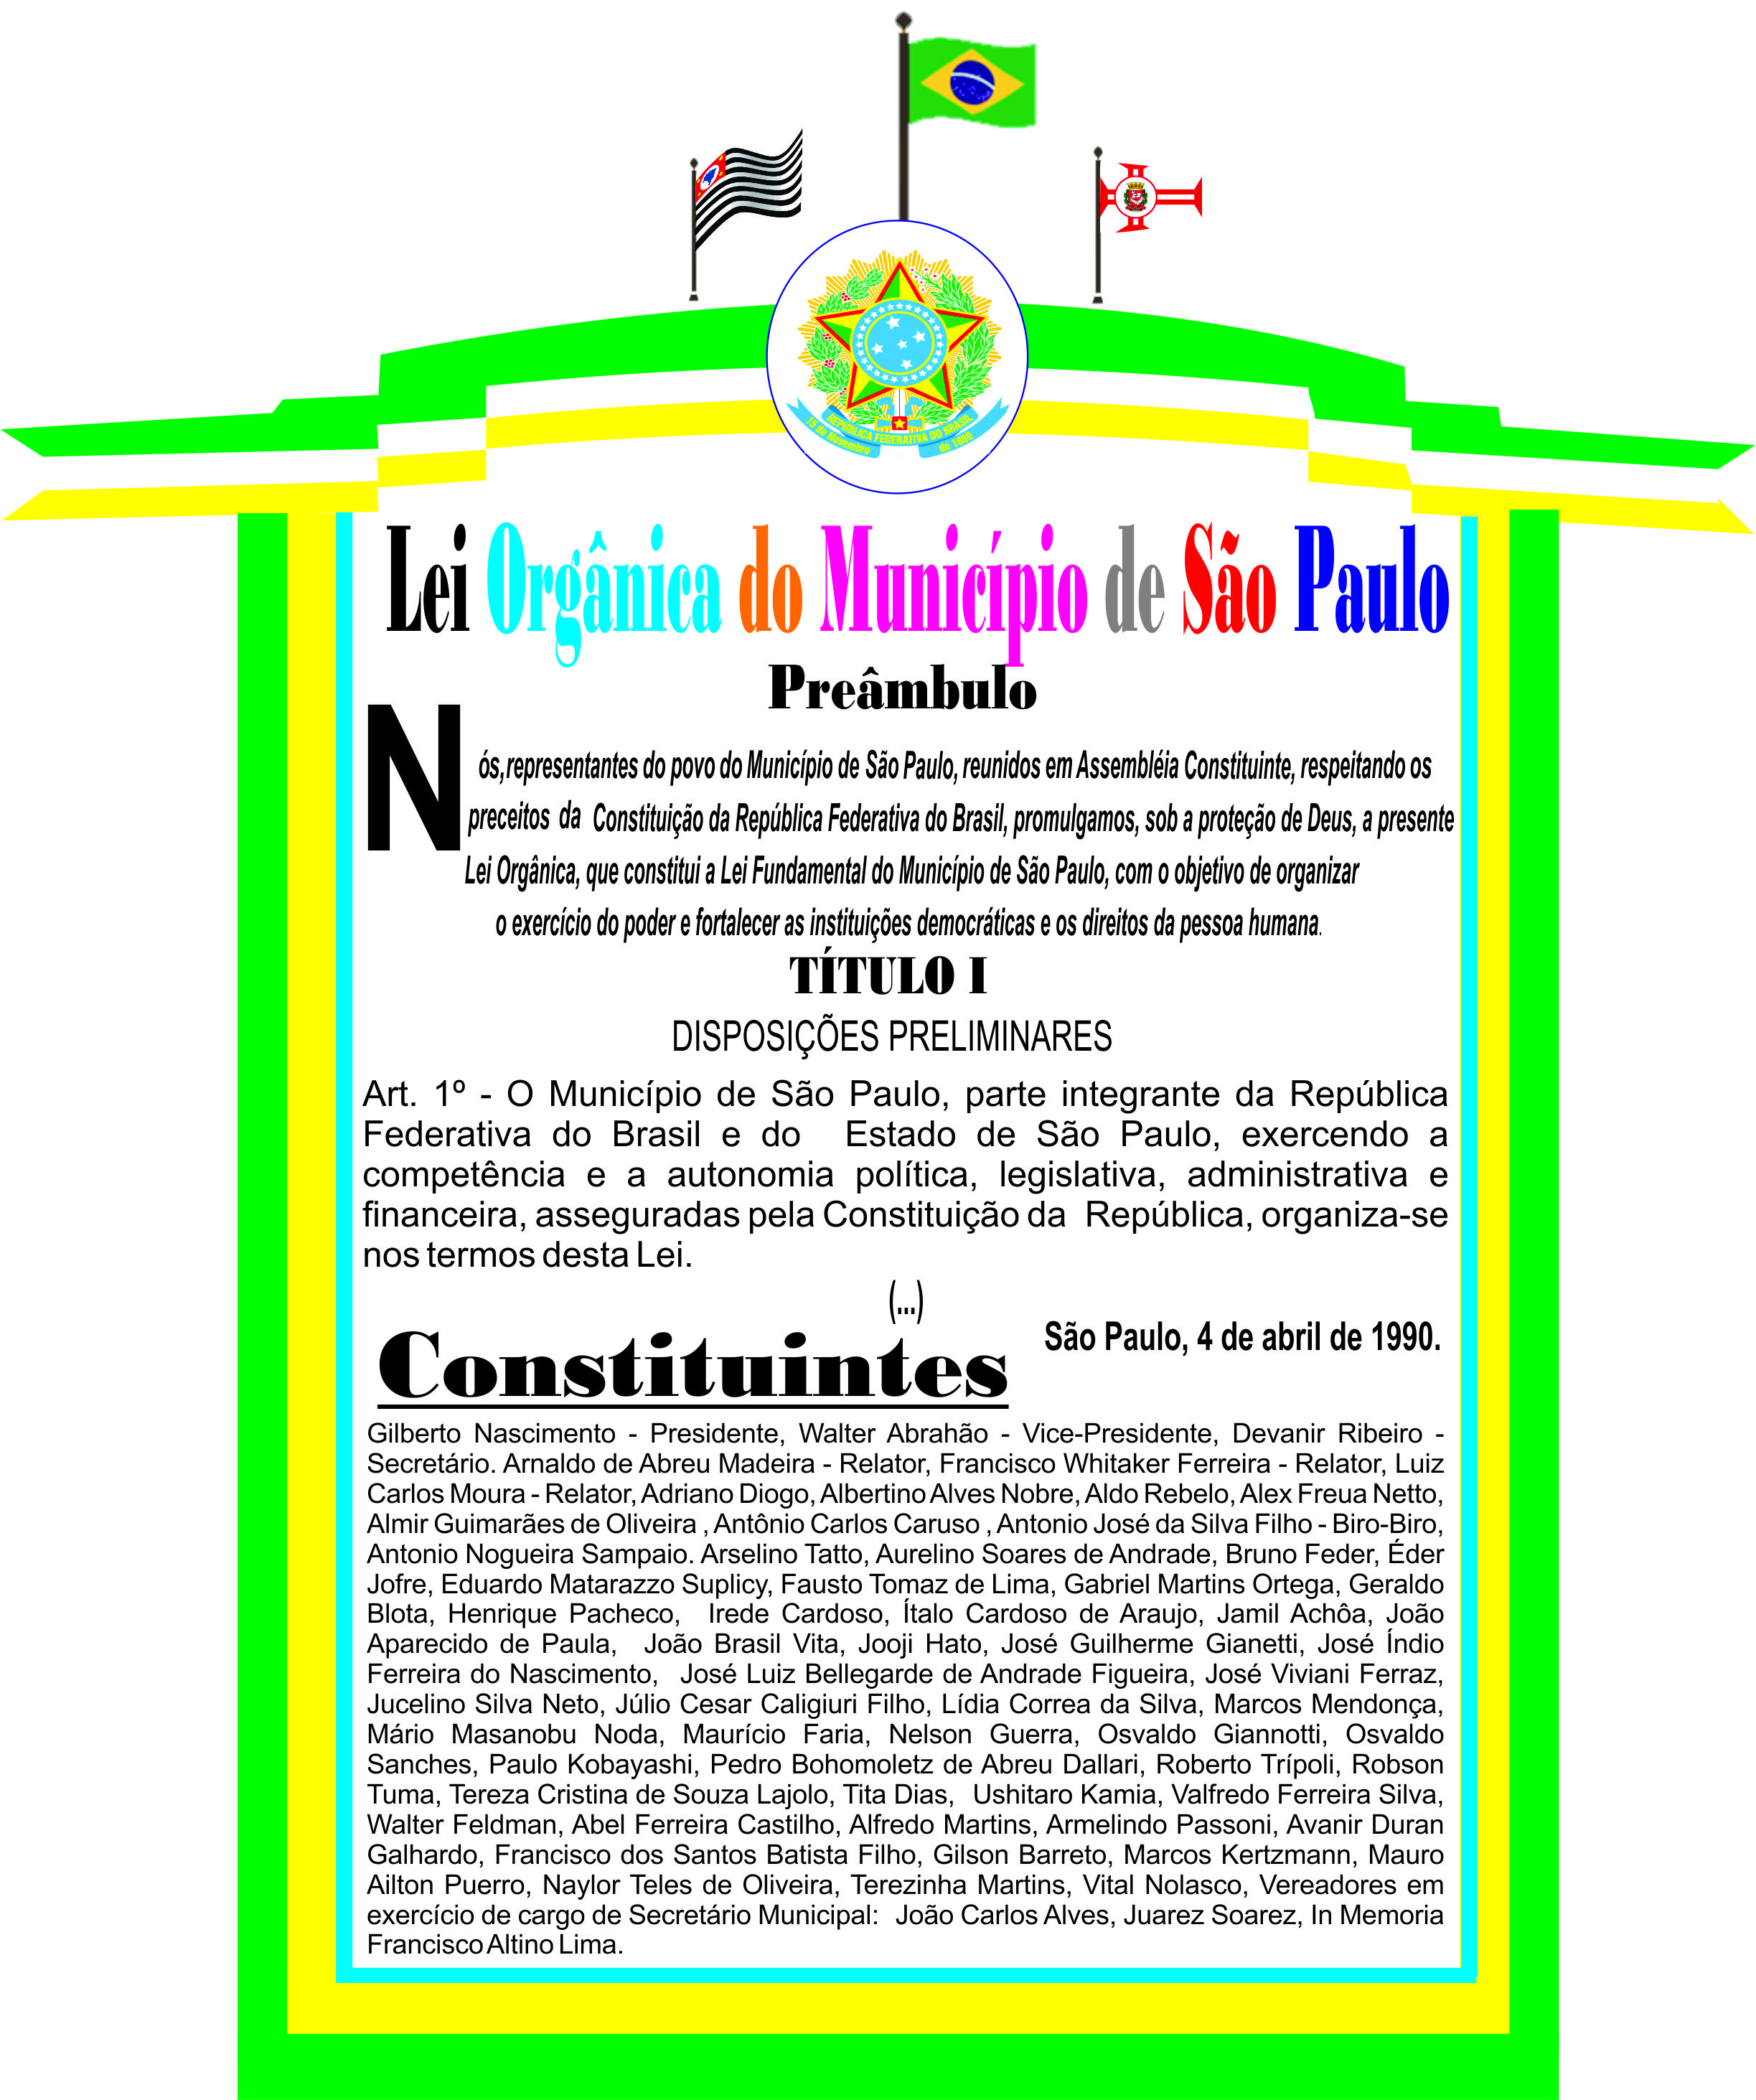 Lei Orgânica Municipal  Prefeitura Municipal de Jampruca